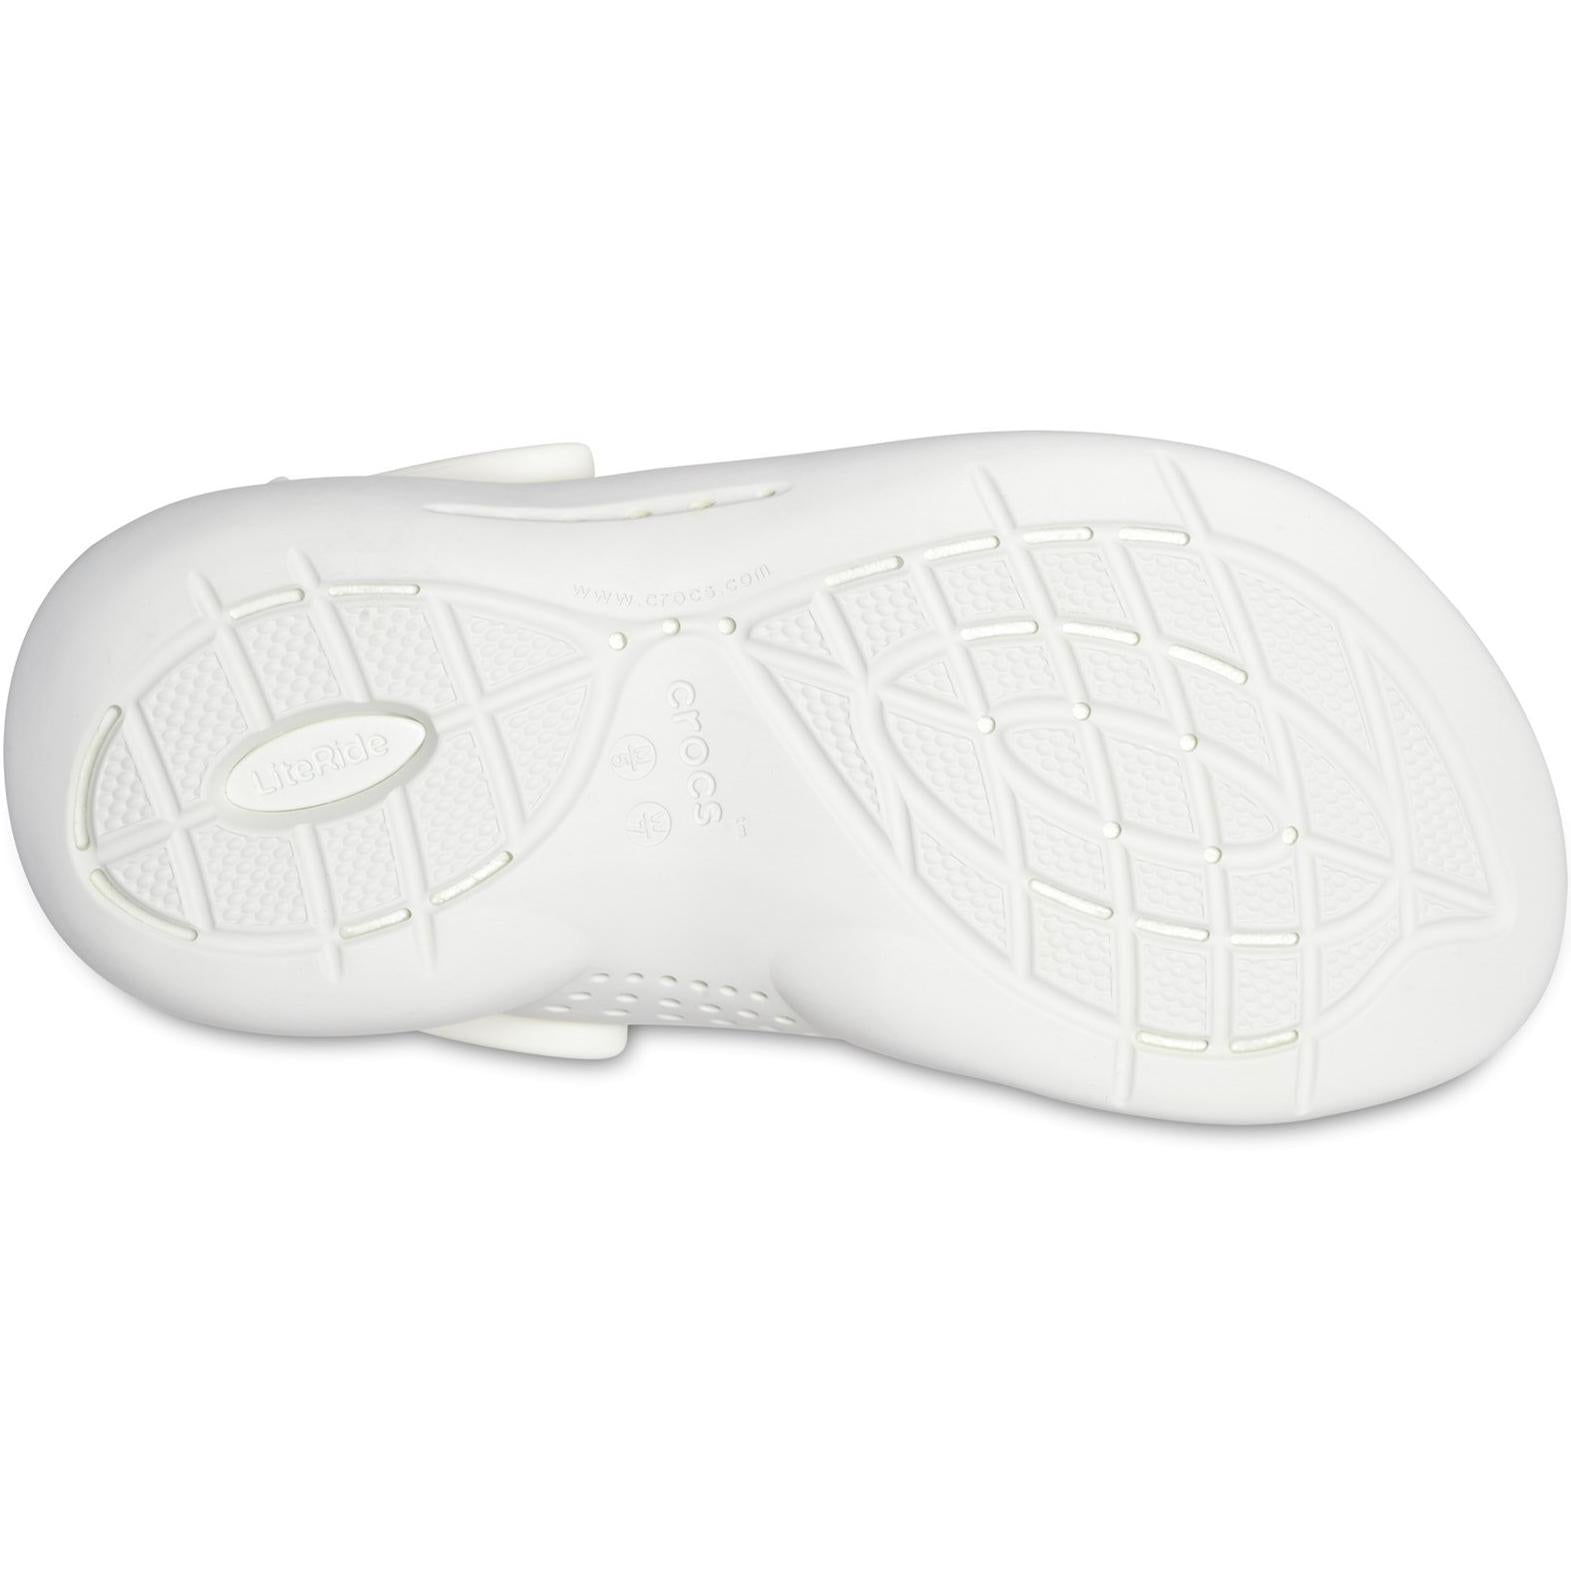 Crocs LiteRide 360 Clog Sandals